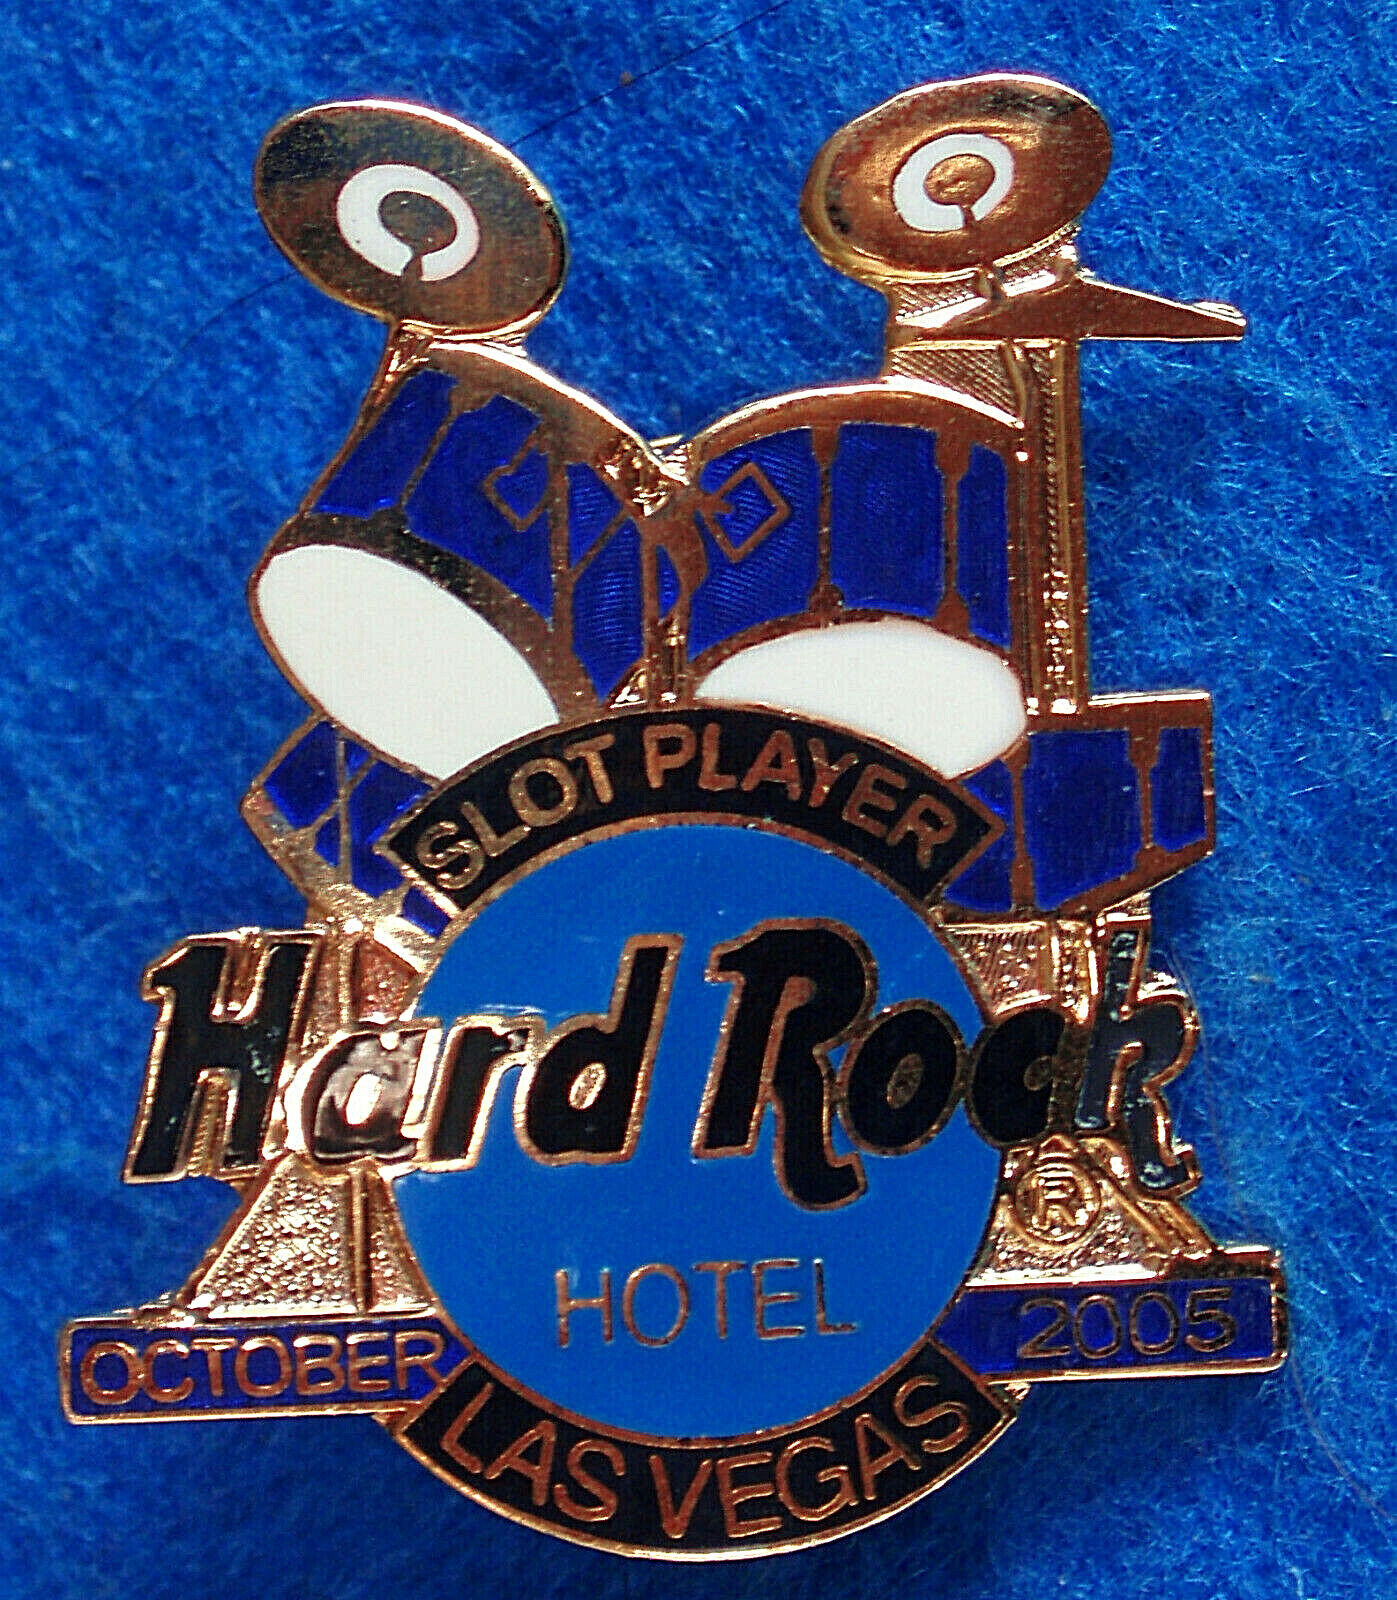 LAS VEGAS HOTEL SLOT SERIES BLUE DRUMKIT DRUMS 2005 Hard Rock Cafe PIN 